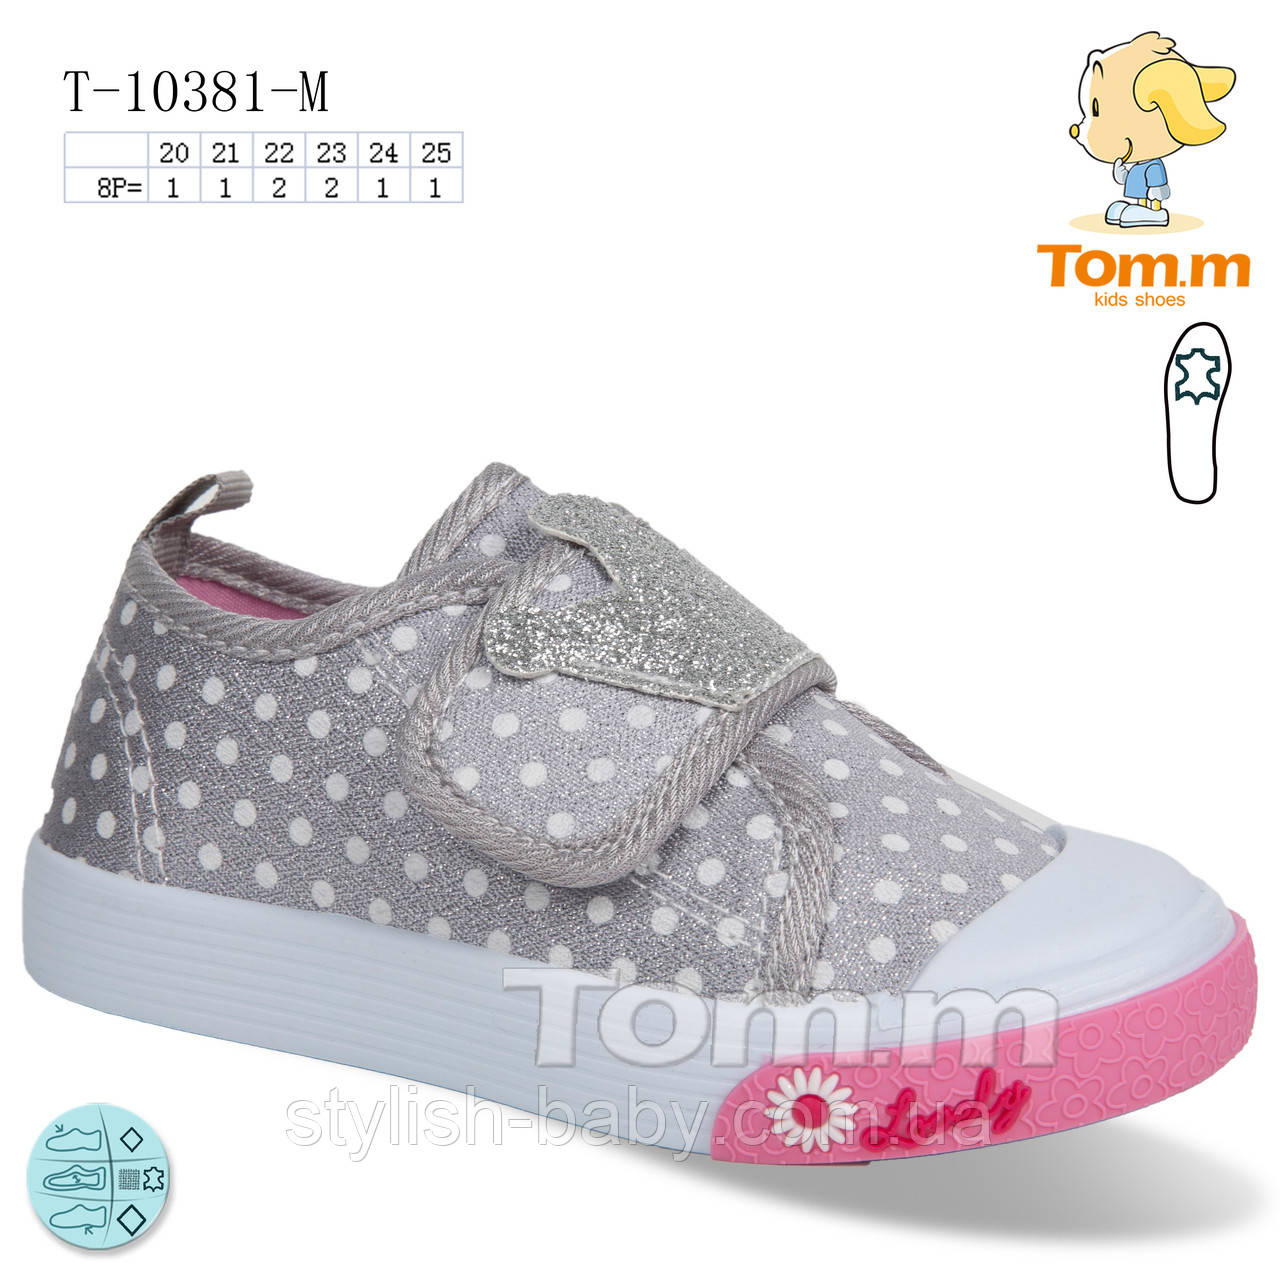 Дитяче взуття гуртом. Дитячі кеди 2023 бренда Tom.m для дівчаток (рр. с 20 по 25)